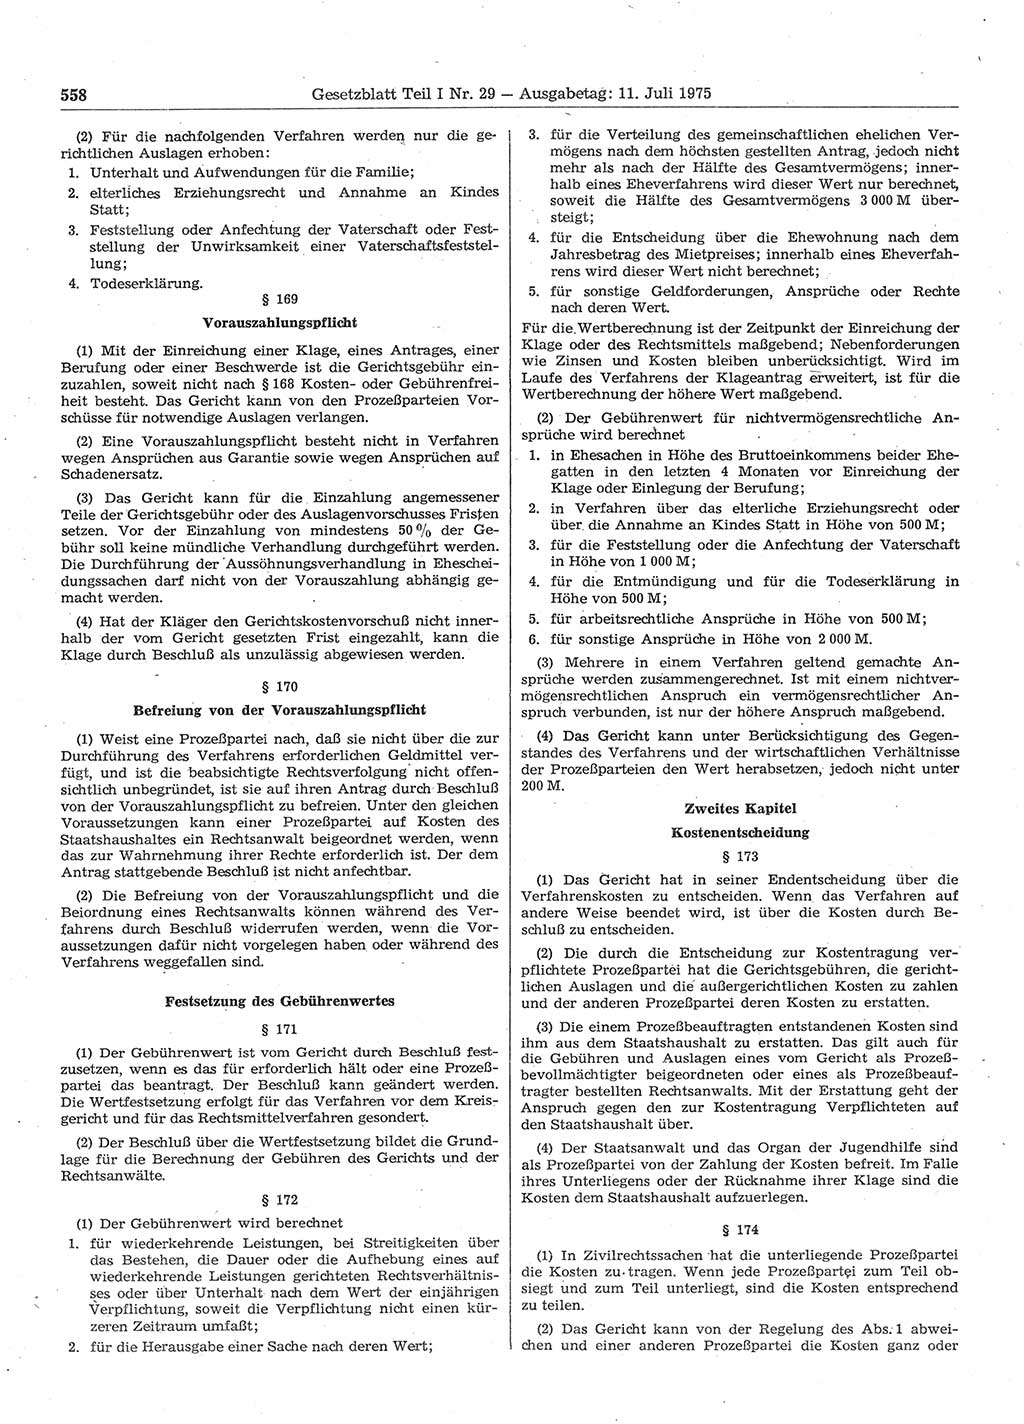 Gesetzblatt (GBl.) der Deutschen Demokratischen Republik (DDR) Teil Ⅰ 1975, Seite 558 (GBl. DDR Ⅰ 1975, S. 558)